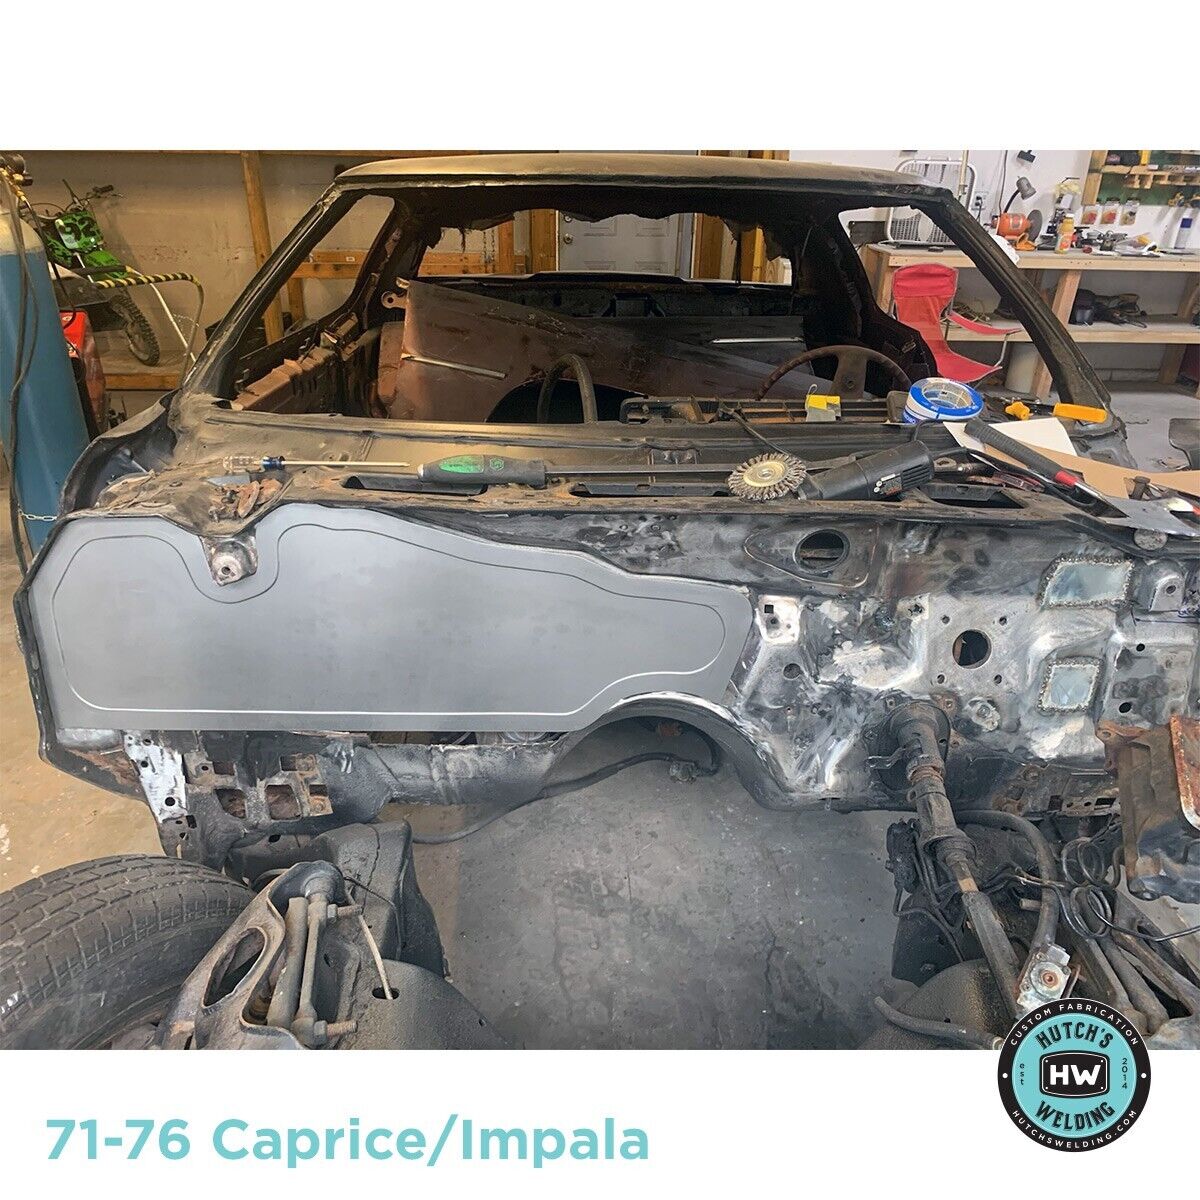 CAPRICE / IMPALA 71-76 FIREWALL PANEL